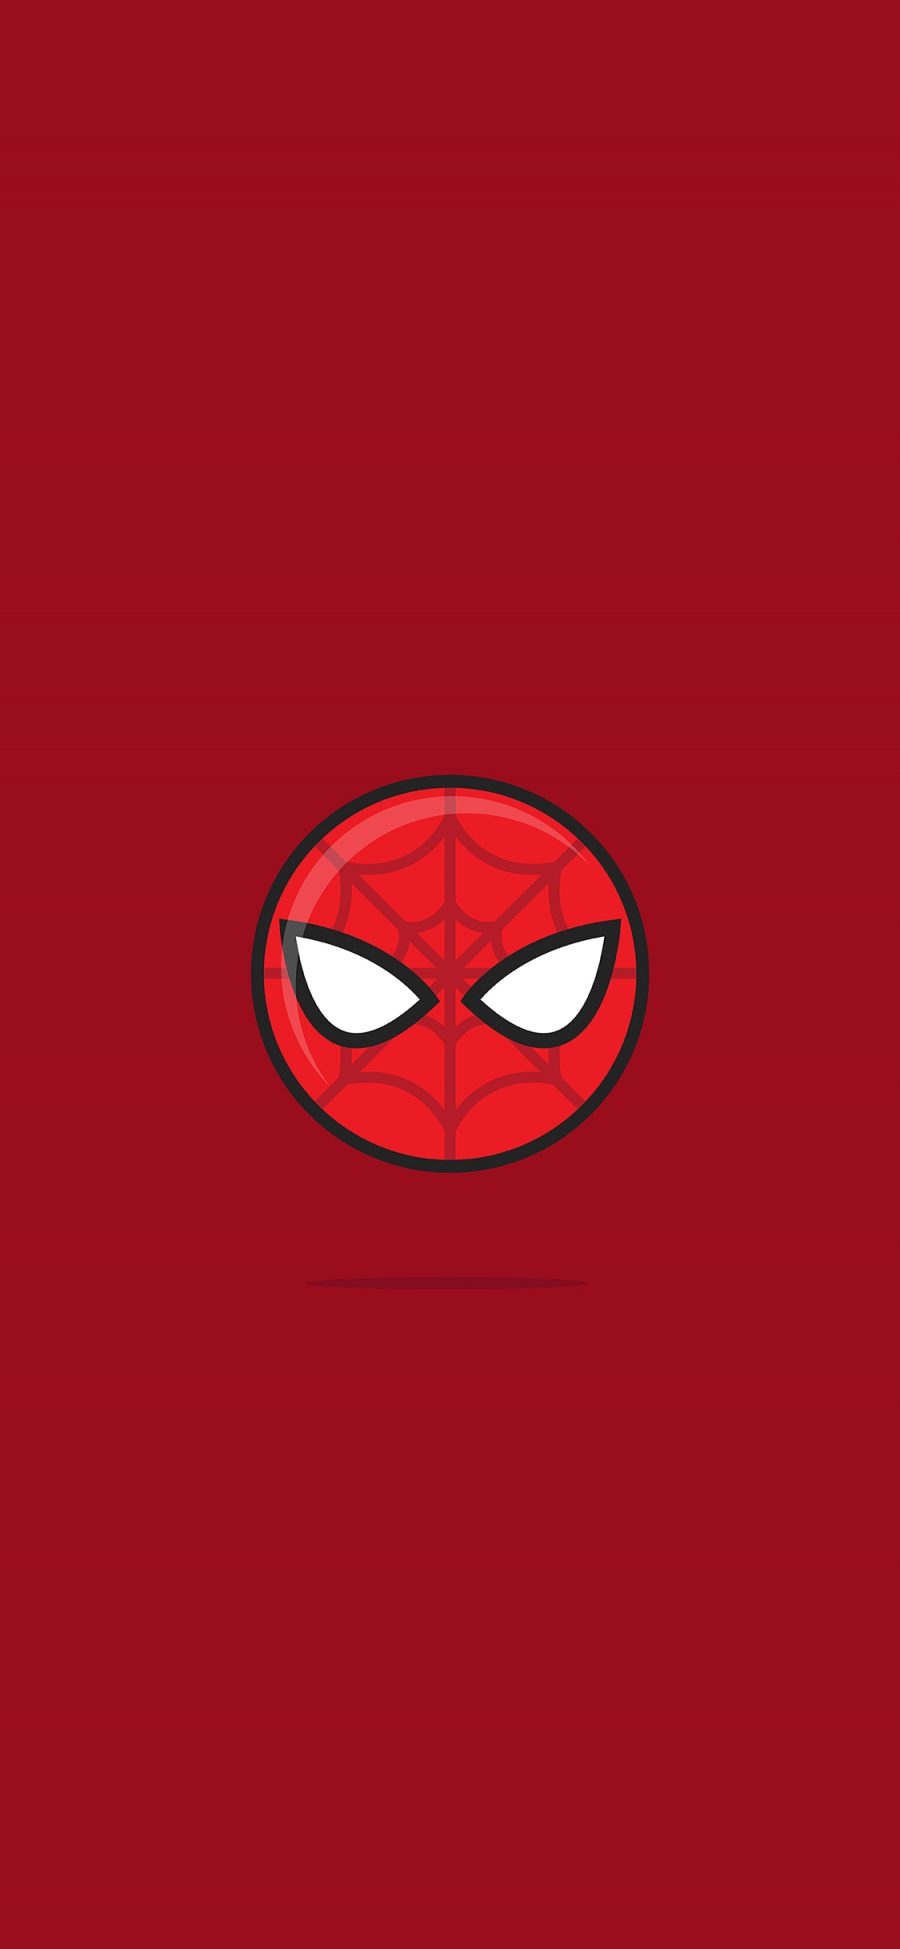 [2436×1125]漫威 蜘蛛侠 超级英雄 Q版 头像 苹果手机动漫壁纸图片